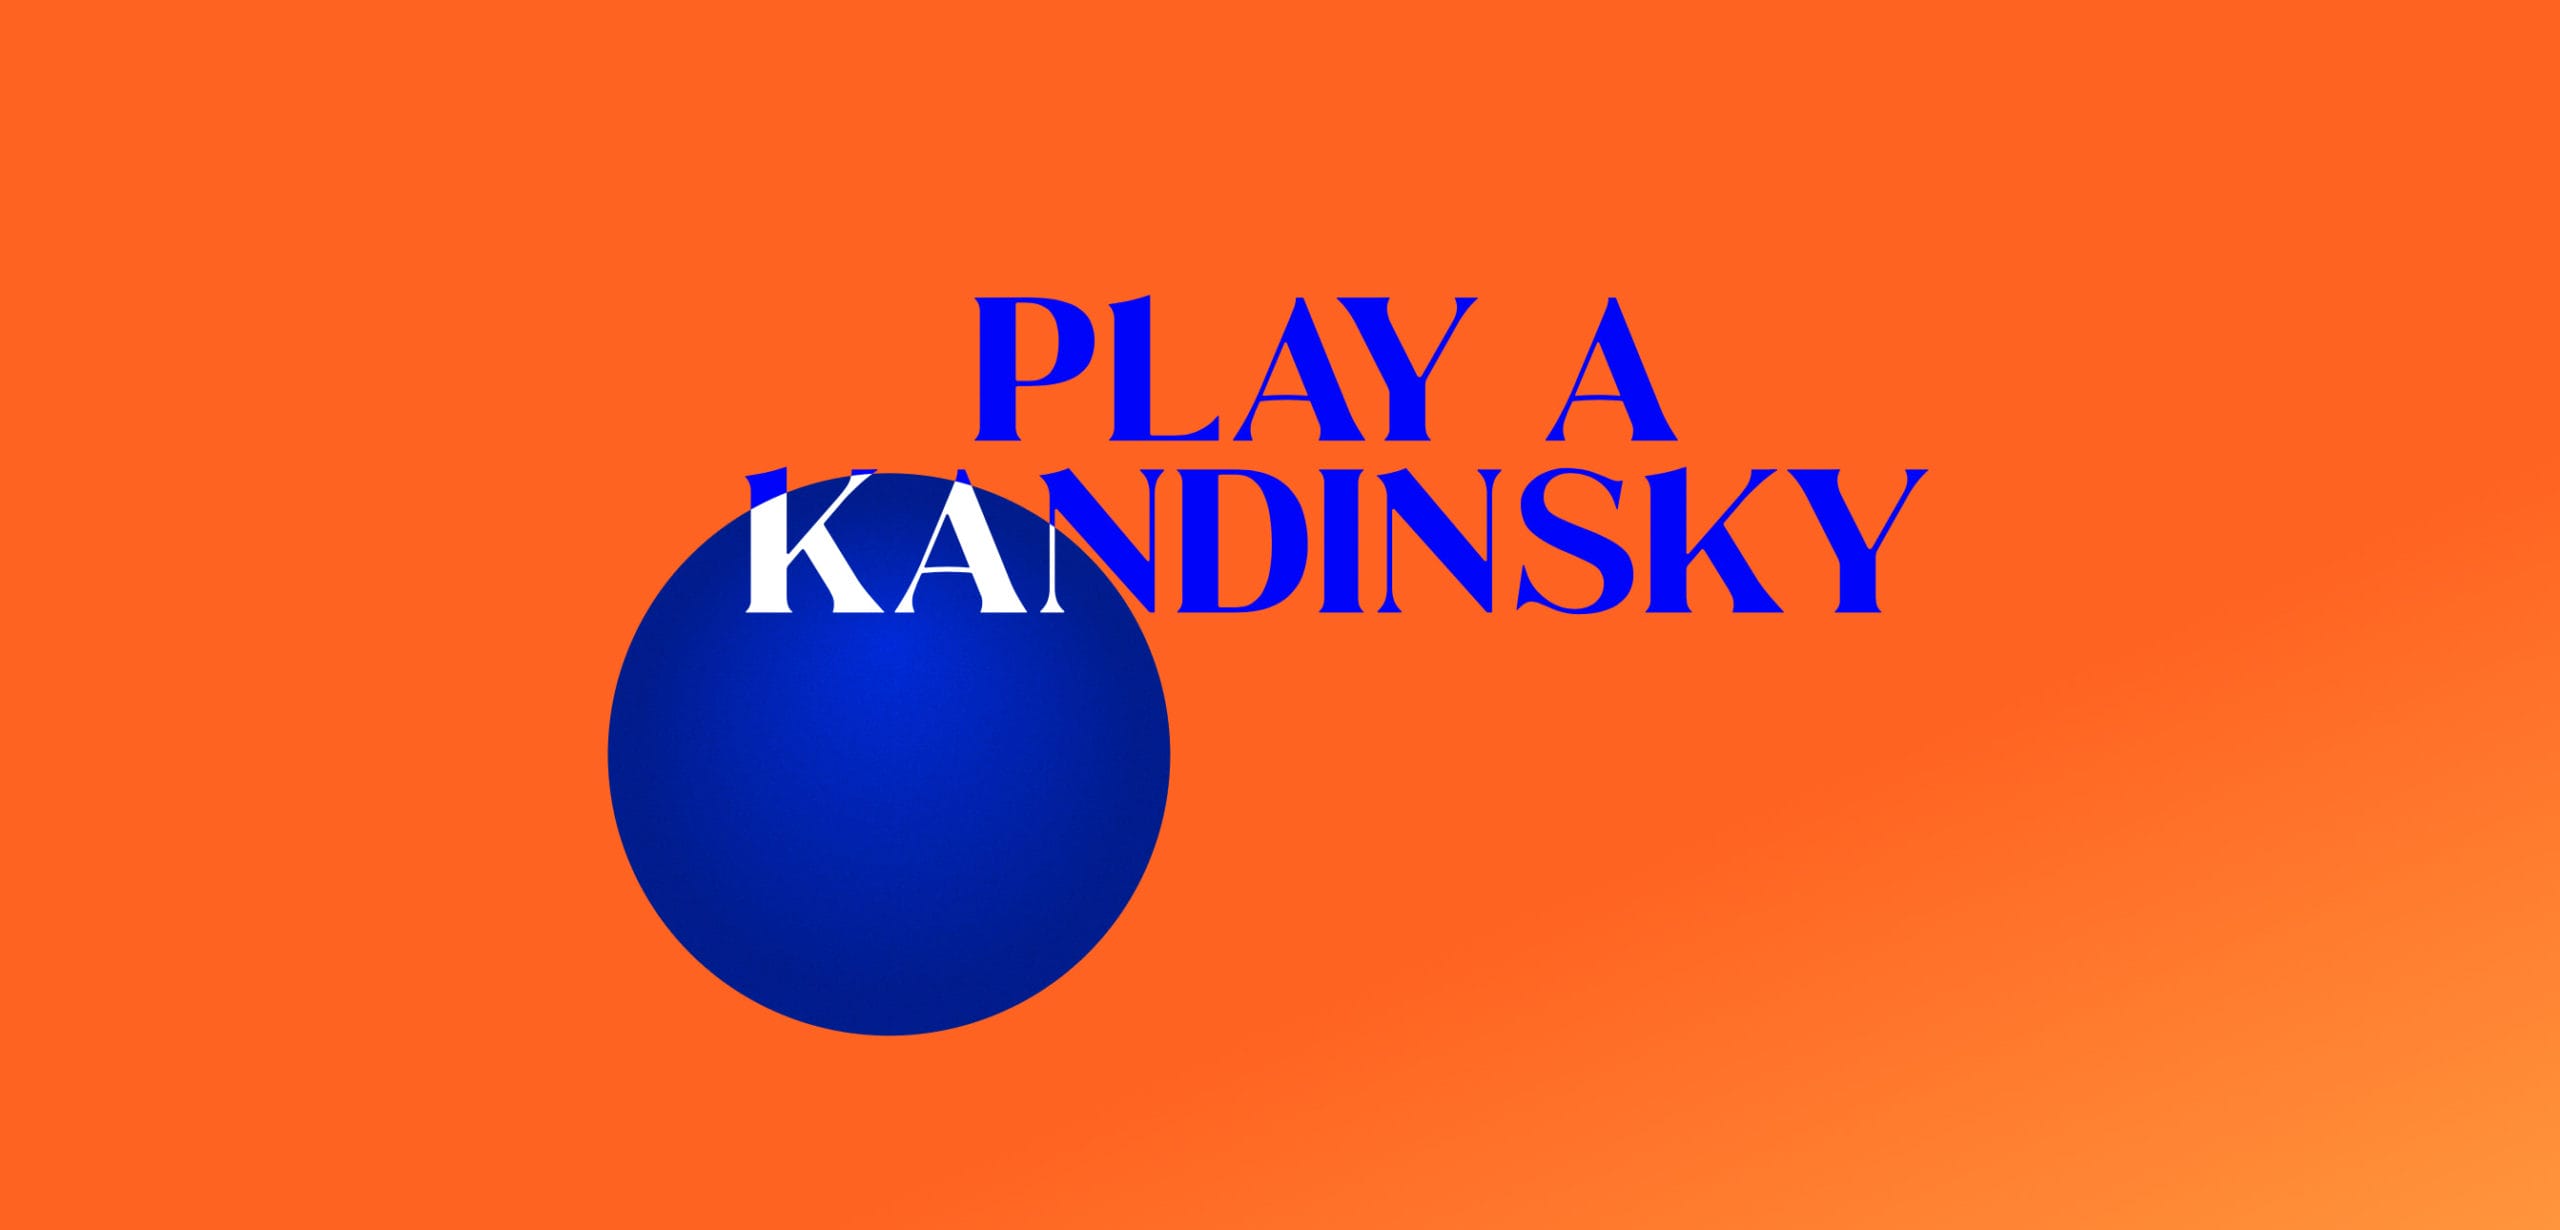 Play a Kadinsky